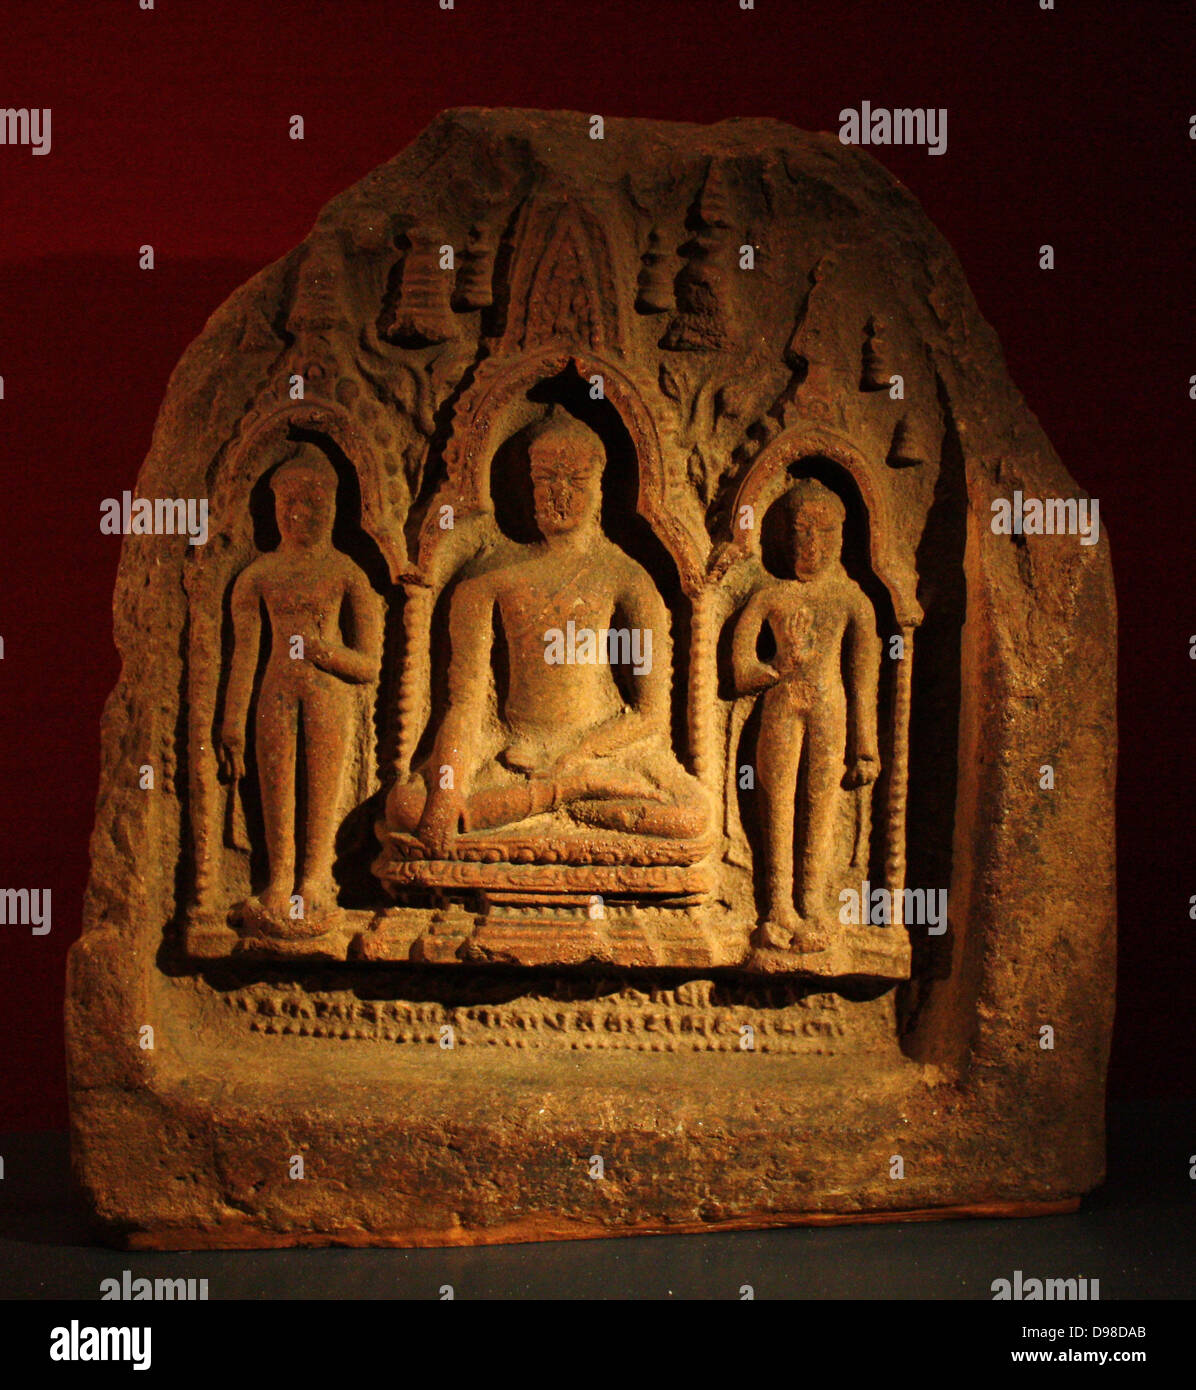 Der Buddha, Terrakotta Plakette, Bodhgaya, 1000-1100. Der Buddha, Buddha, flankiert vom Attendant, macht die Erde berühren Geste. Stockfoto